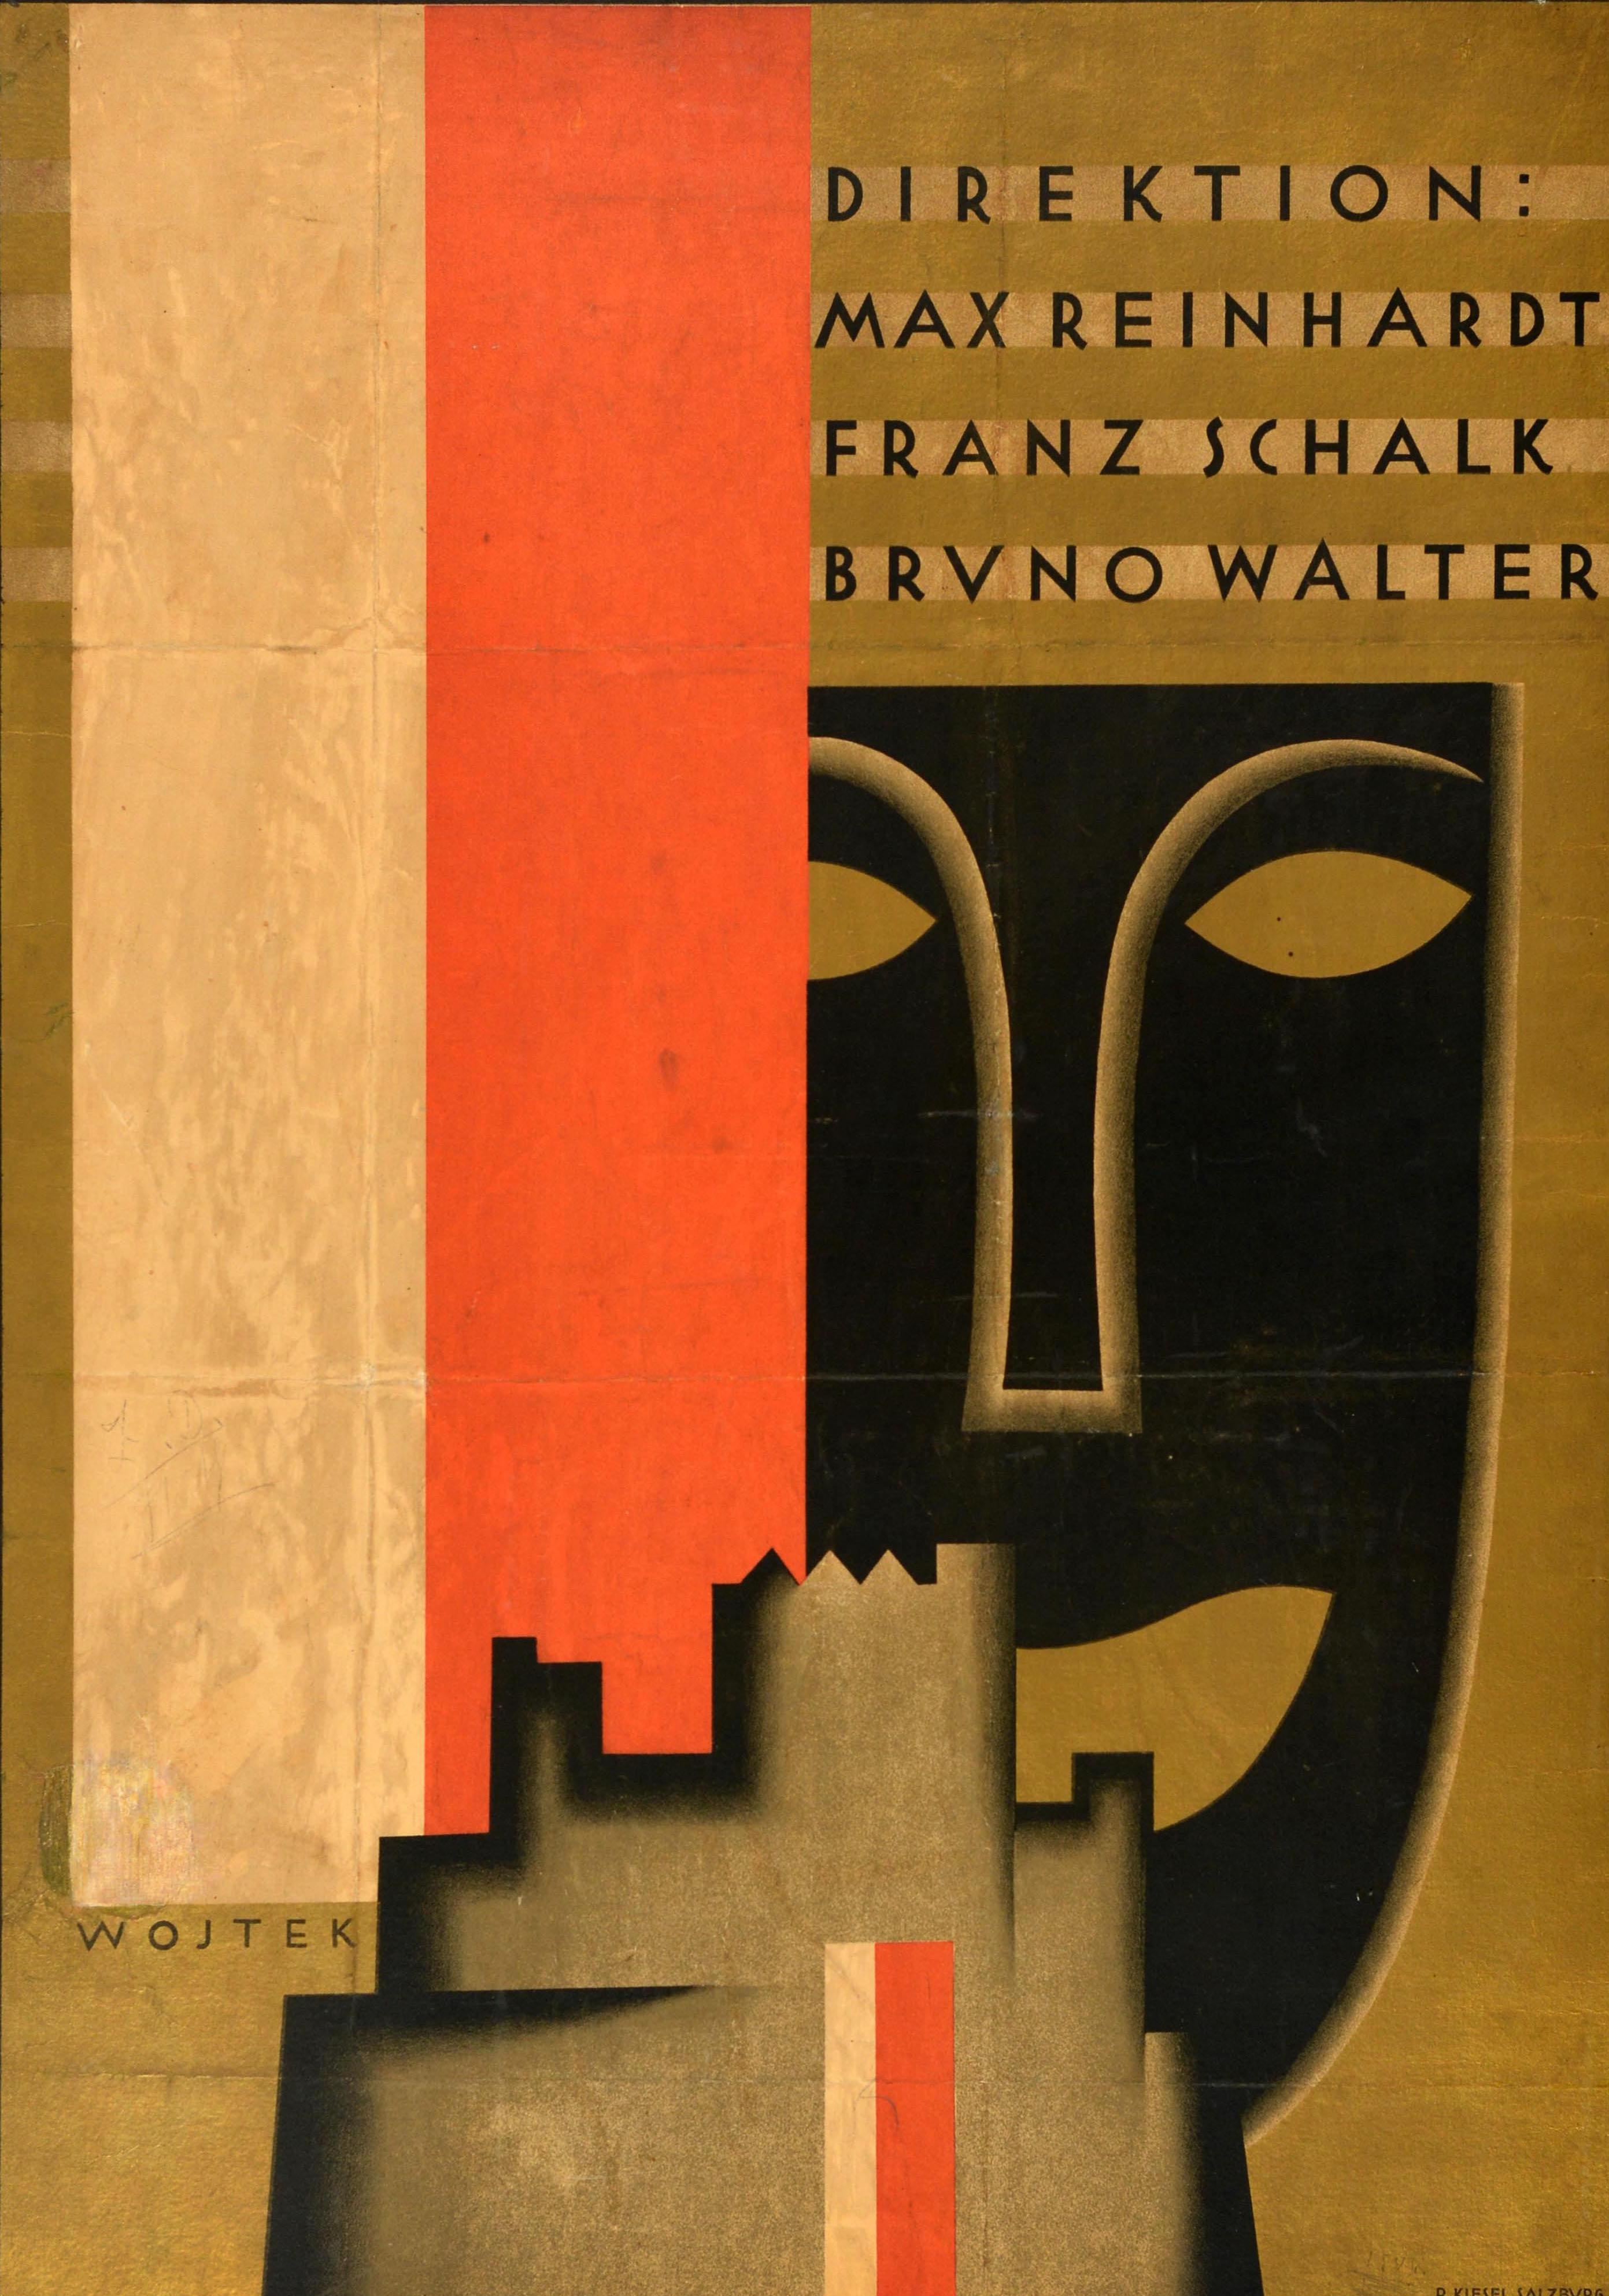 Affiche publicitaire originale d'époque pour le Salzburger Festspiele / Festival de Salzbourg du 26 juillet au 30 août 1928 sous la direction de Max Reinhardt, Franz Schalk et Bruno Walter, comportant un grand design représentant un contour de